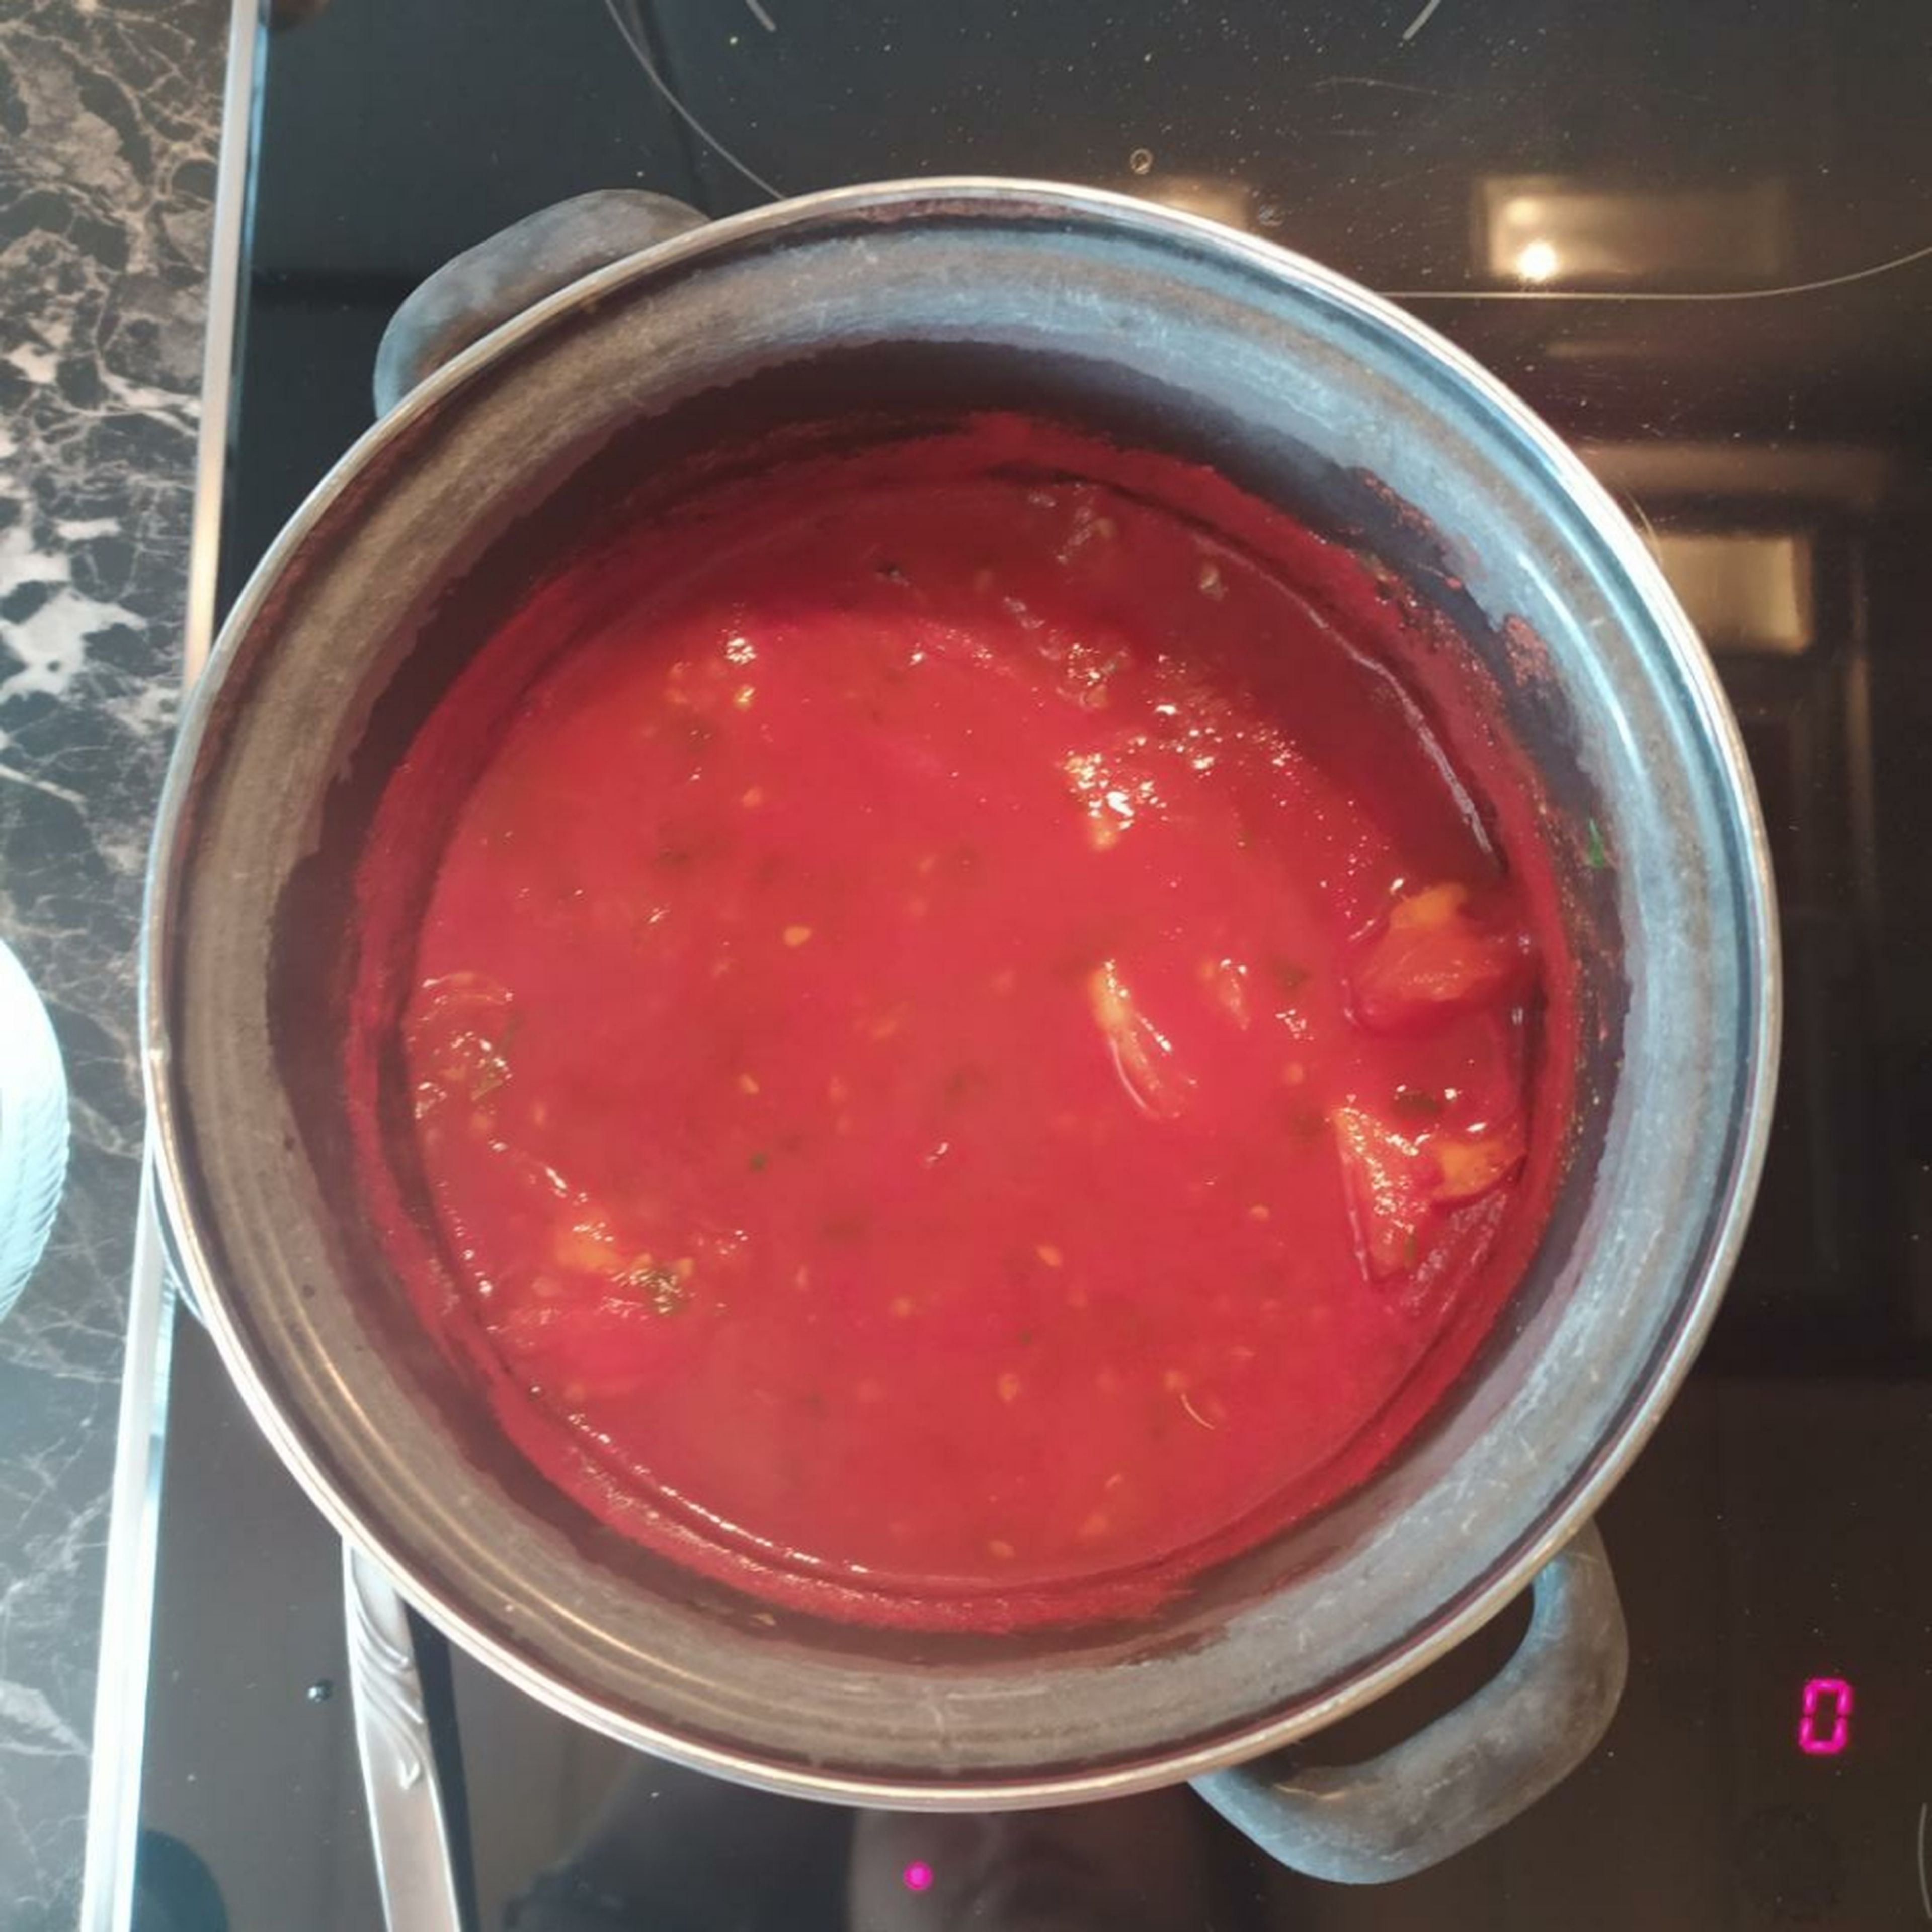 250ml Wasser aufkochen, Gemüsebrühe, Tomateninneres und Tomatenmark einrühren. Petersilie und Oregano hinzufügen. Ca. 2-4 Minuten aufkochen.